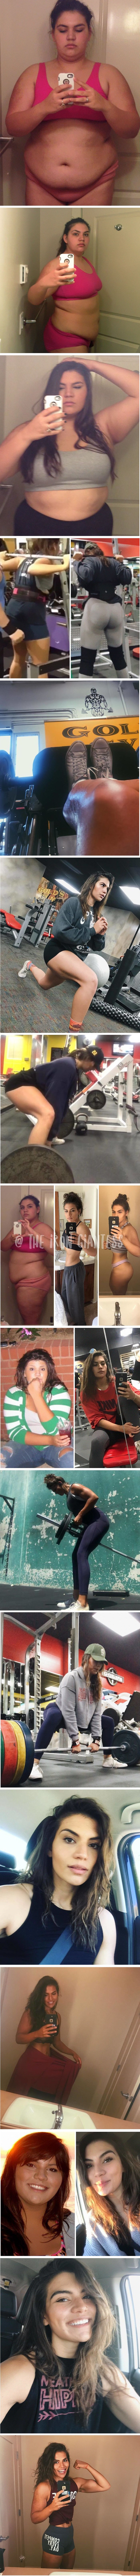 Imala je 140 kilograma, a onda je odlučila promijeniti svoj život iz korijena 